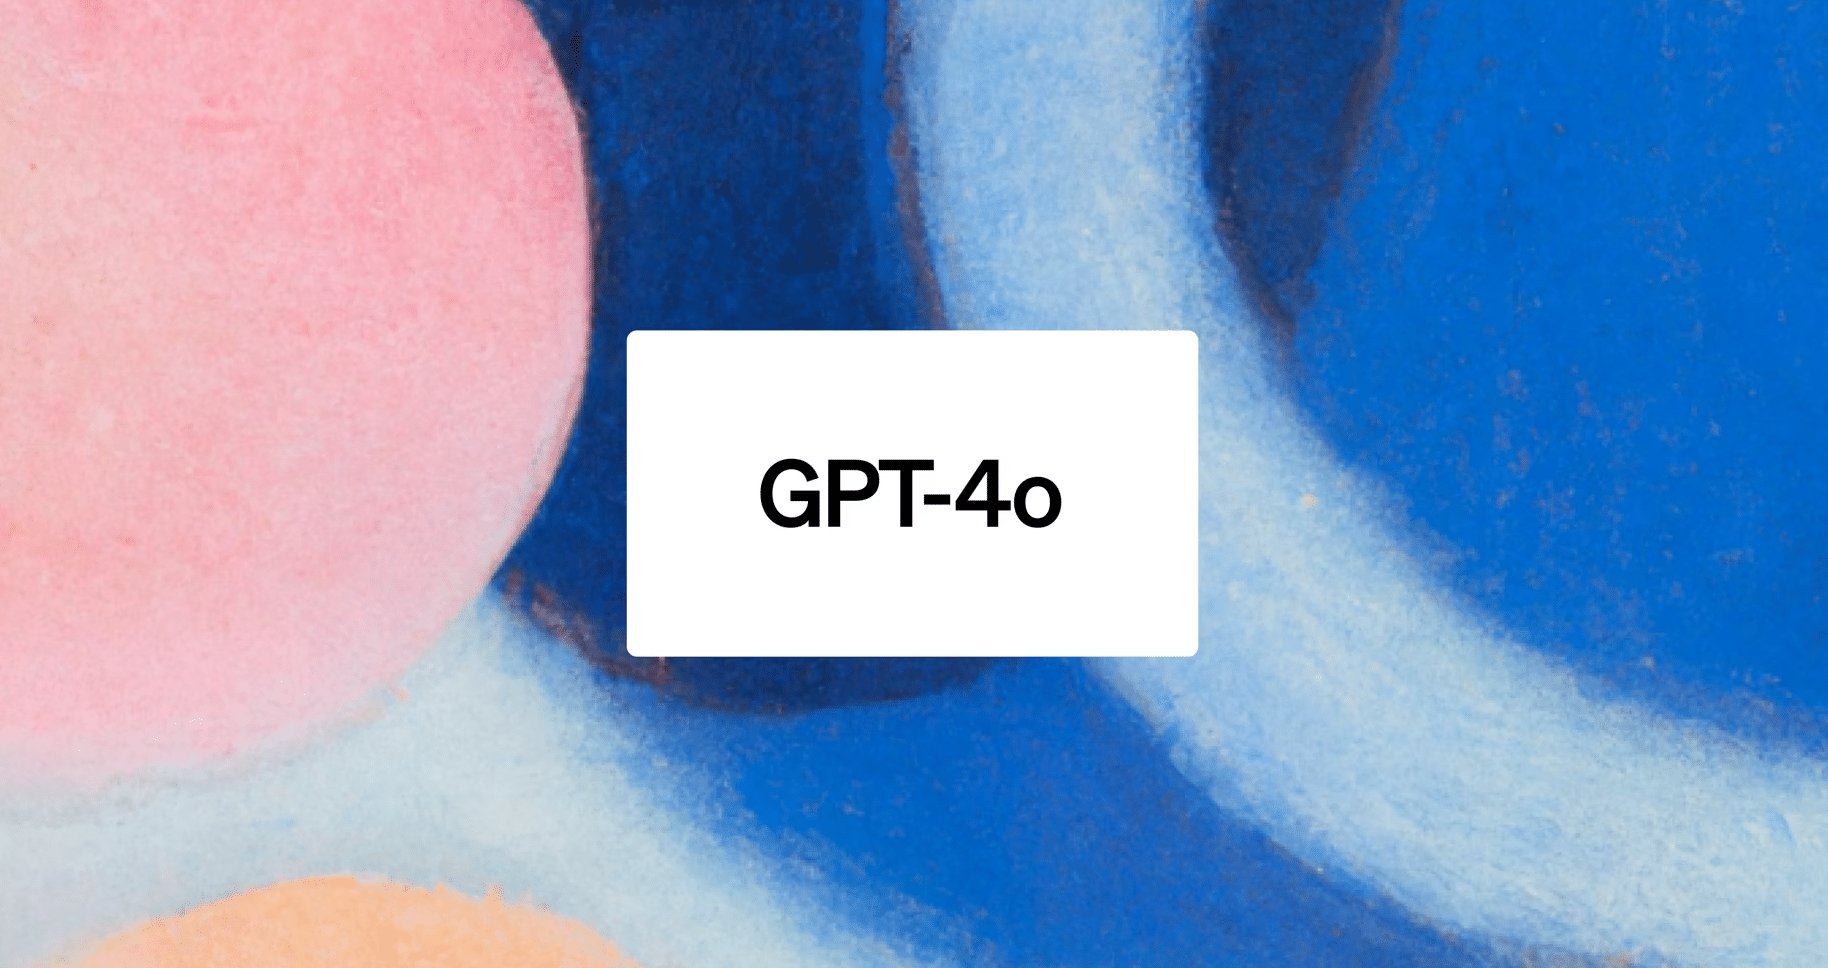 L'image représente un fond abstrait avec des formes circulaires de différentes couleurs, principalement du rose et du bleu, avec un texte "GPT-4o" au centre.